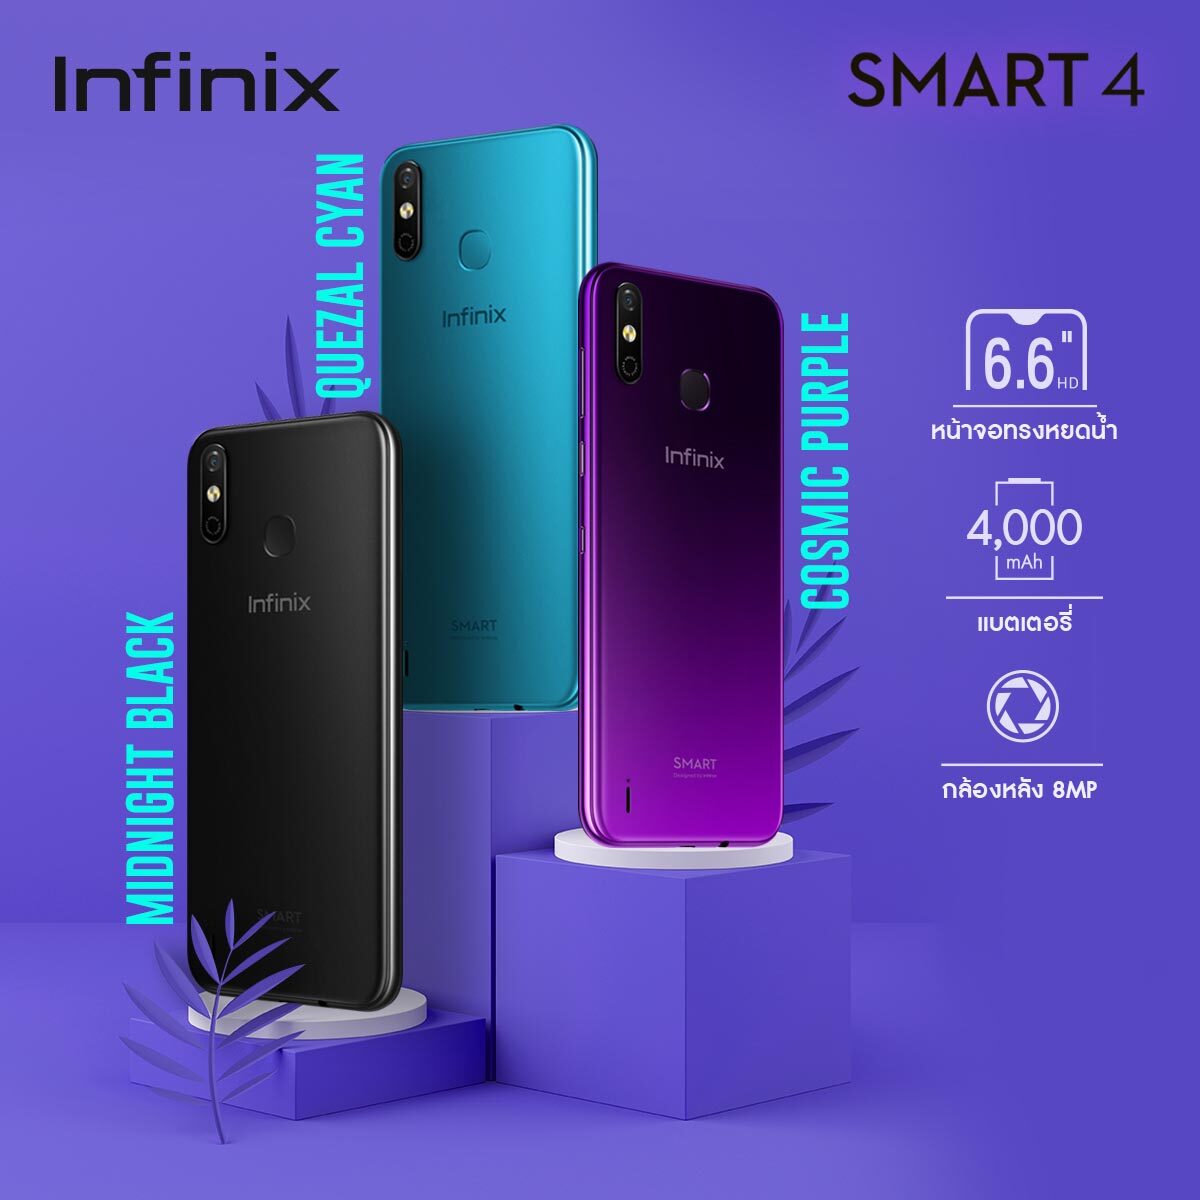 มือถือ มือถือ ราคาไม่เกิน 5000 บาท Infinix Smart 4